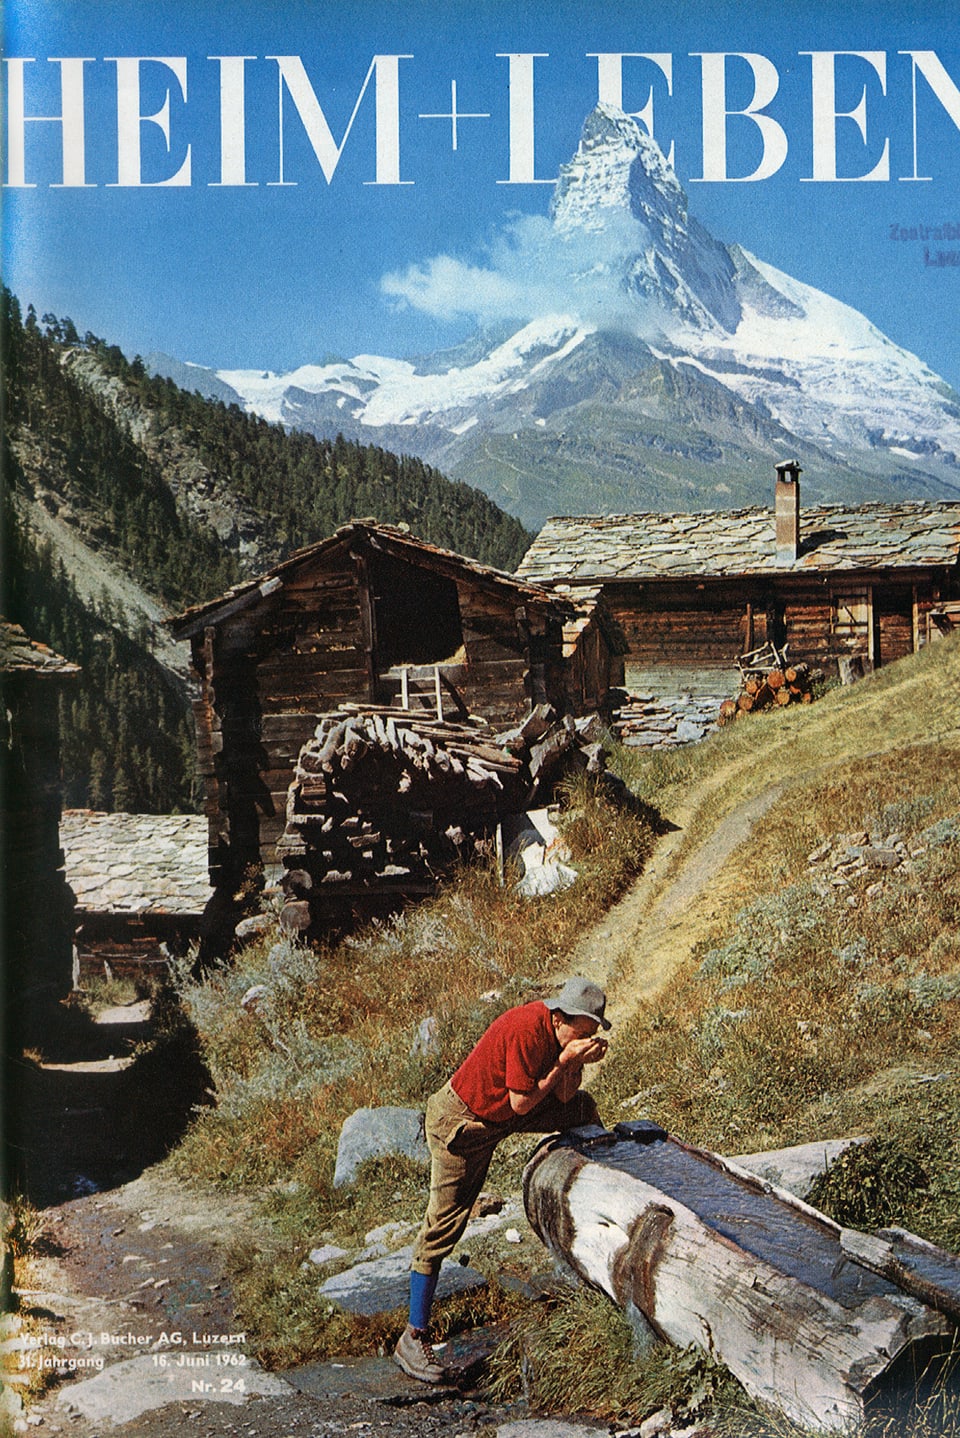 Cover von «Heim und Leben», 31. Jahrgang, 16. Juni 1962: Ein Wanderer in rotem Hemd trinkt aus einem Brunnen.